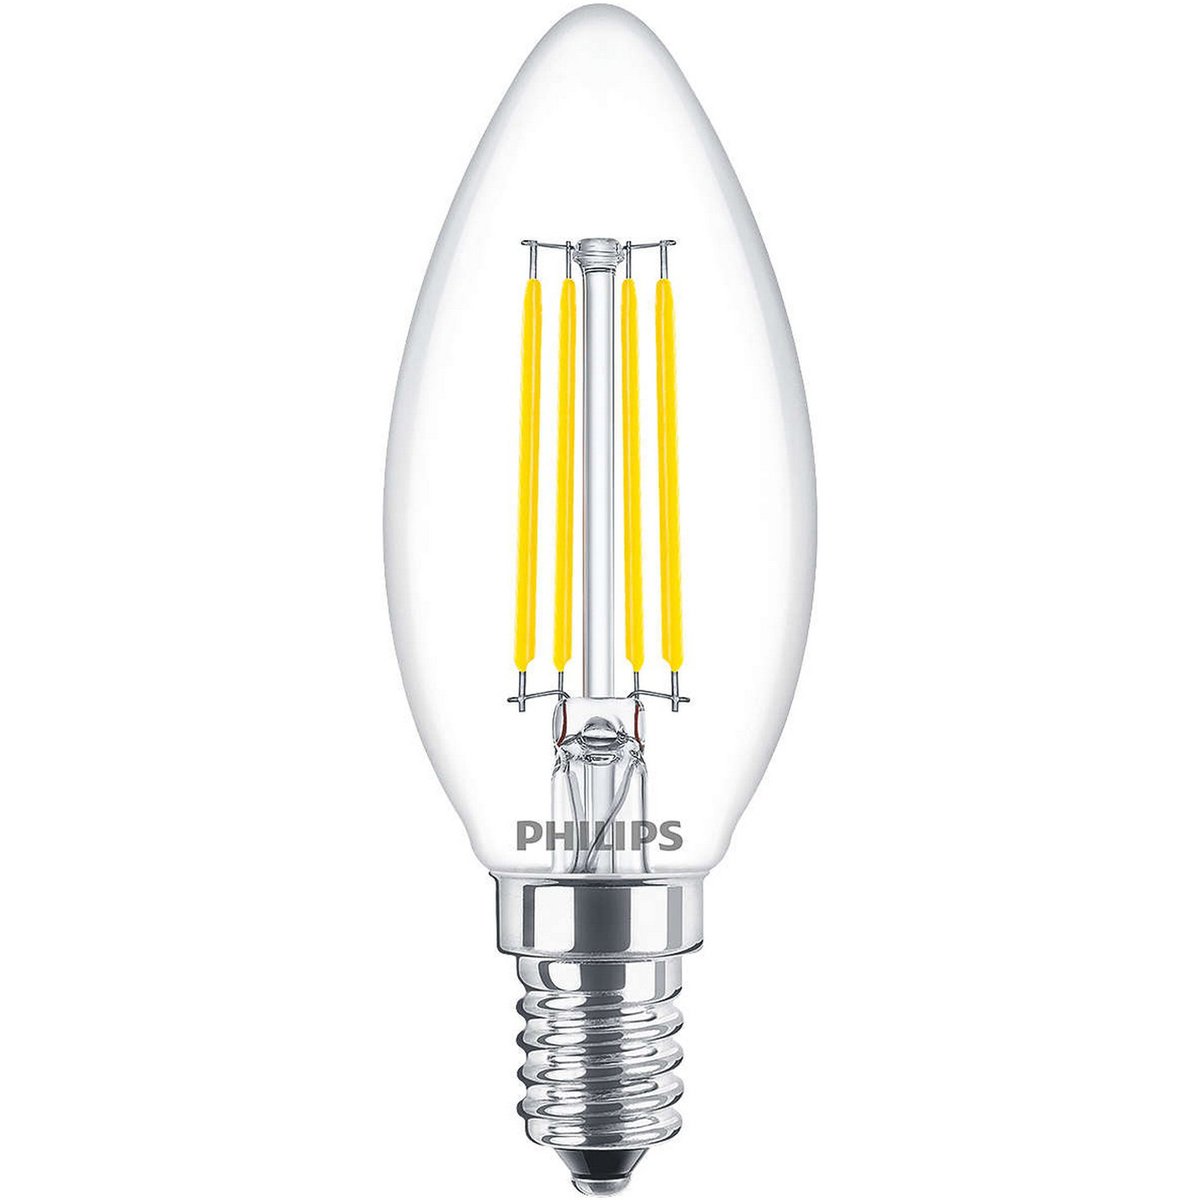 Philips DUBAI LAMP LED B35 1-25W E14 CL ND 830